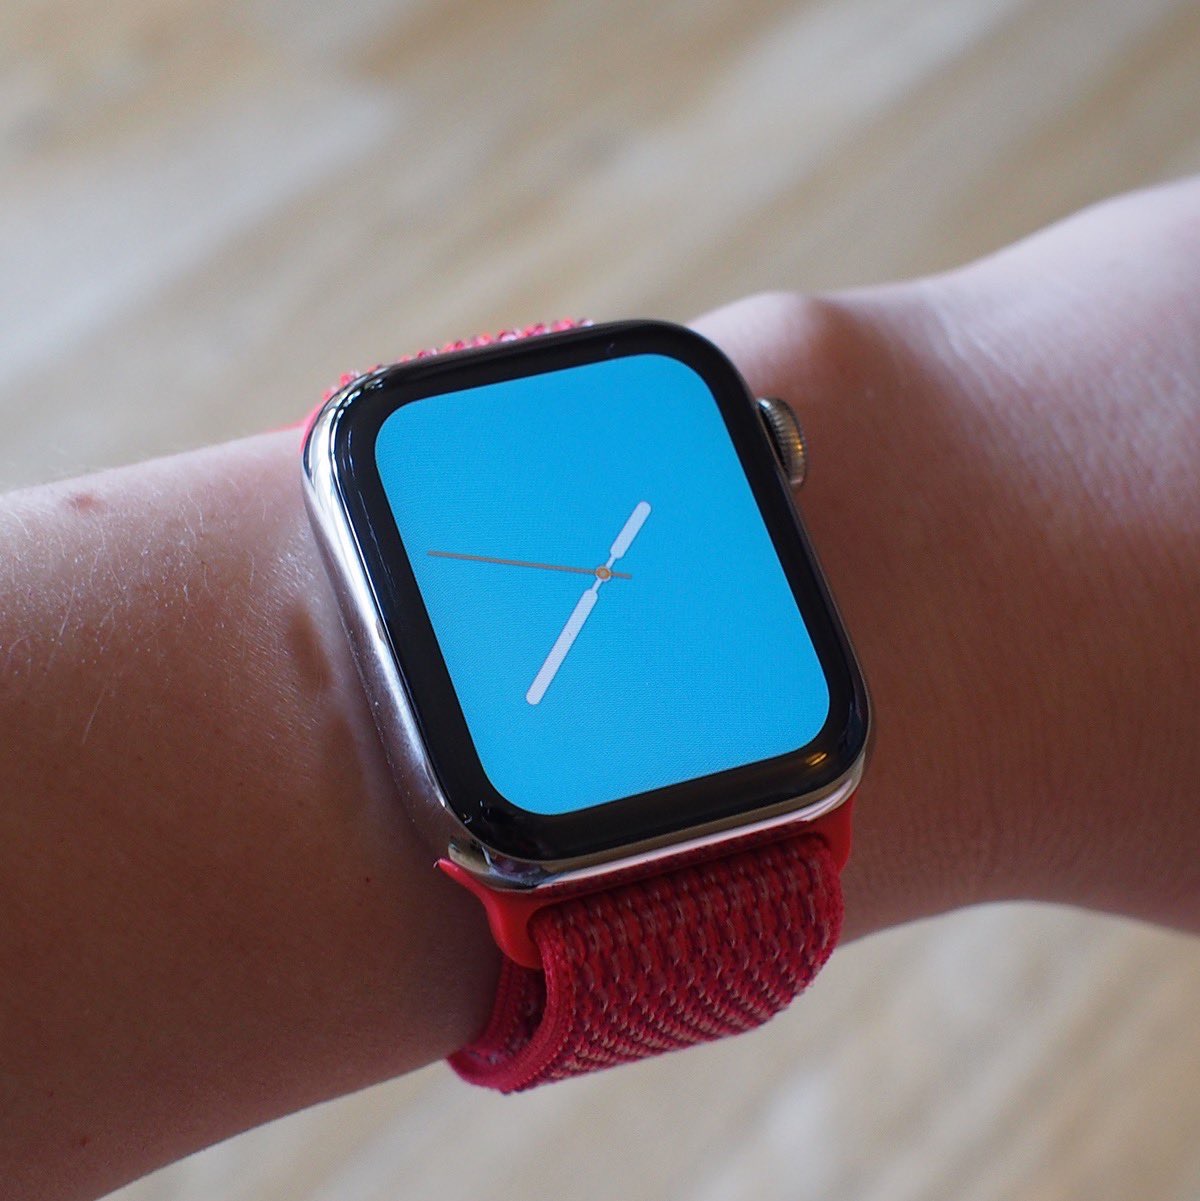 В watchOS 5.1 нашли потрясающие циферблаты для Apple Watch Series 4